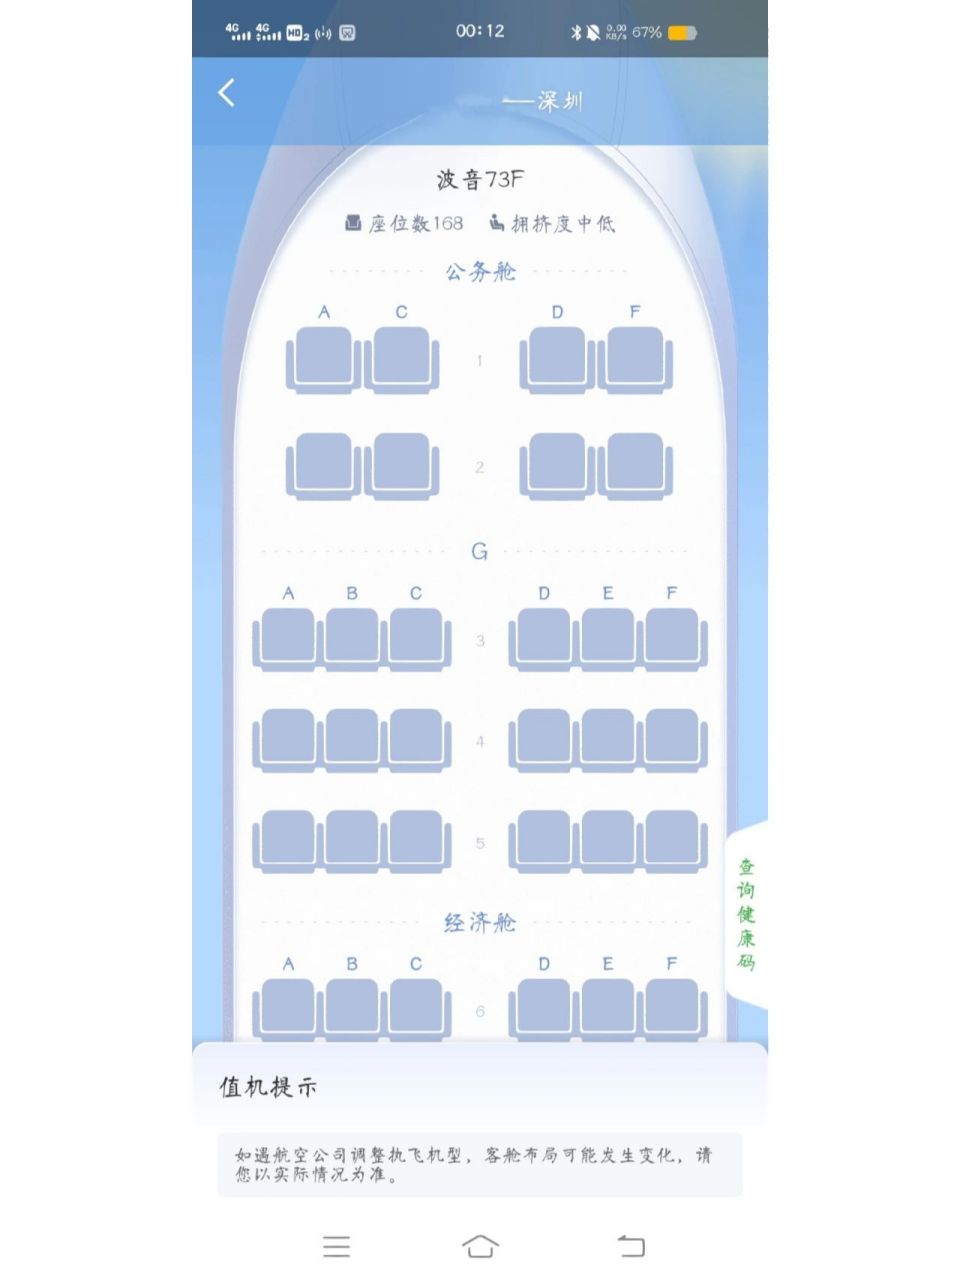 深圳航空zh最佳座位图图片